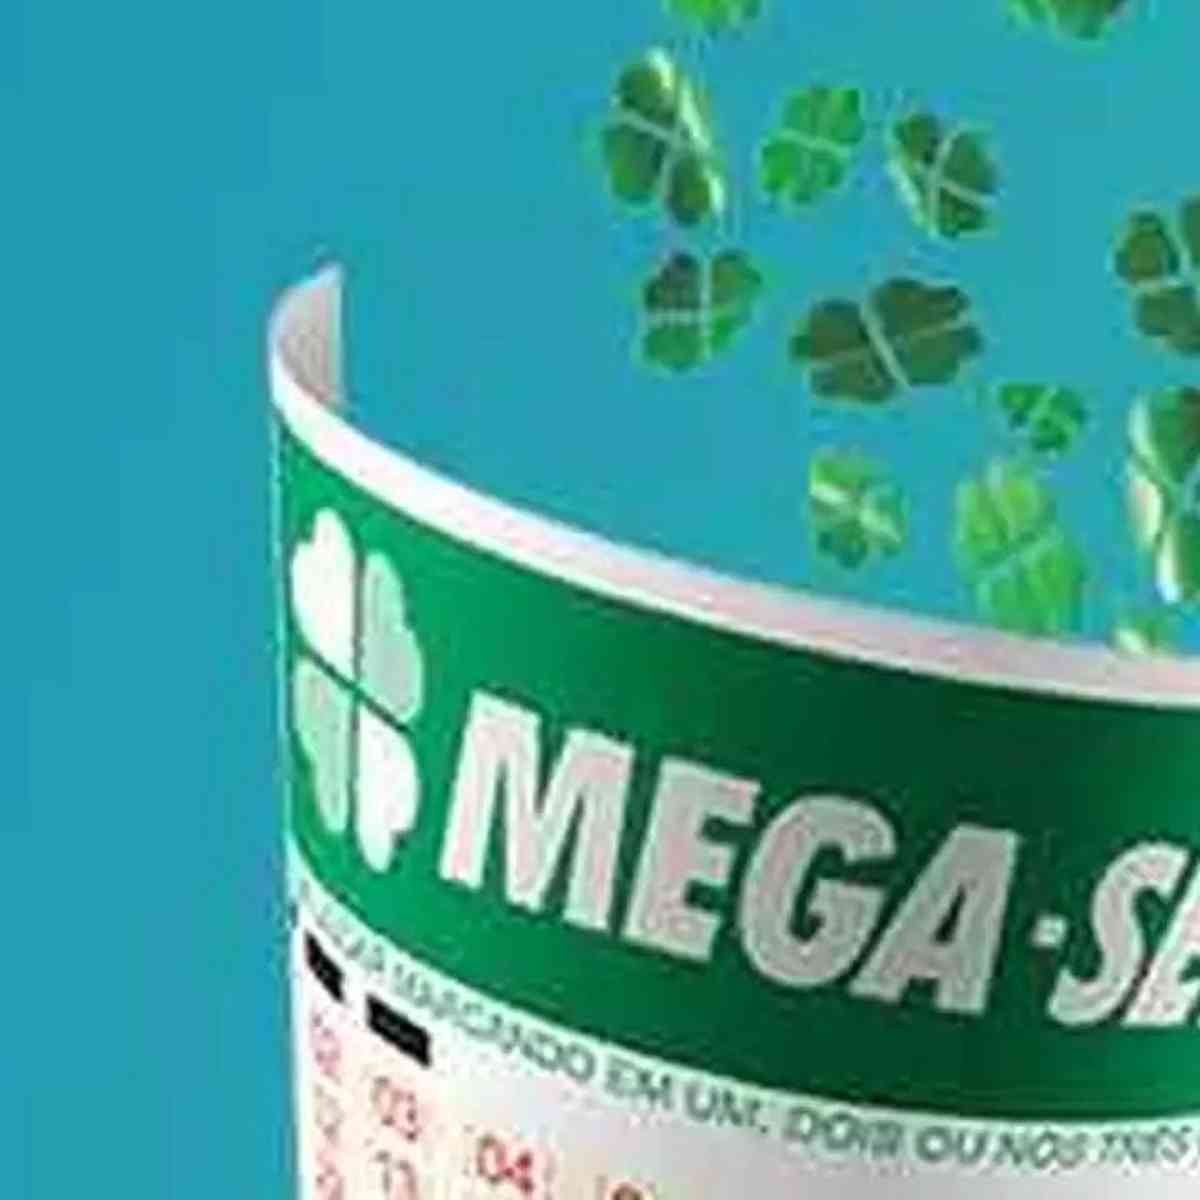 Mega-Sena acumulada: prêmio de R$ 10 milhões será sorteado neste sábado  (16) – Radar da Imprensa – Estadão E-Investidor – As principais notícias do  mercado financeiro